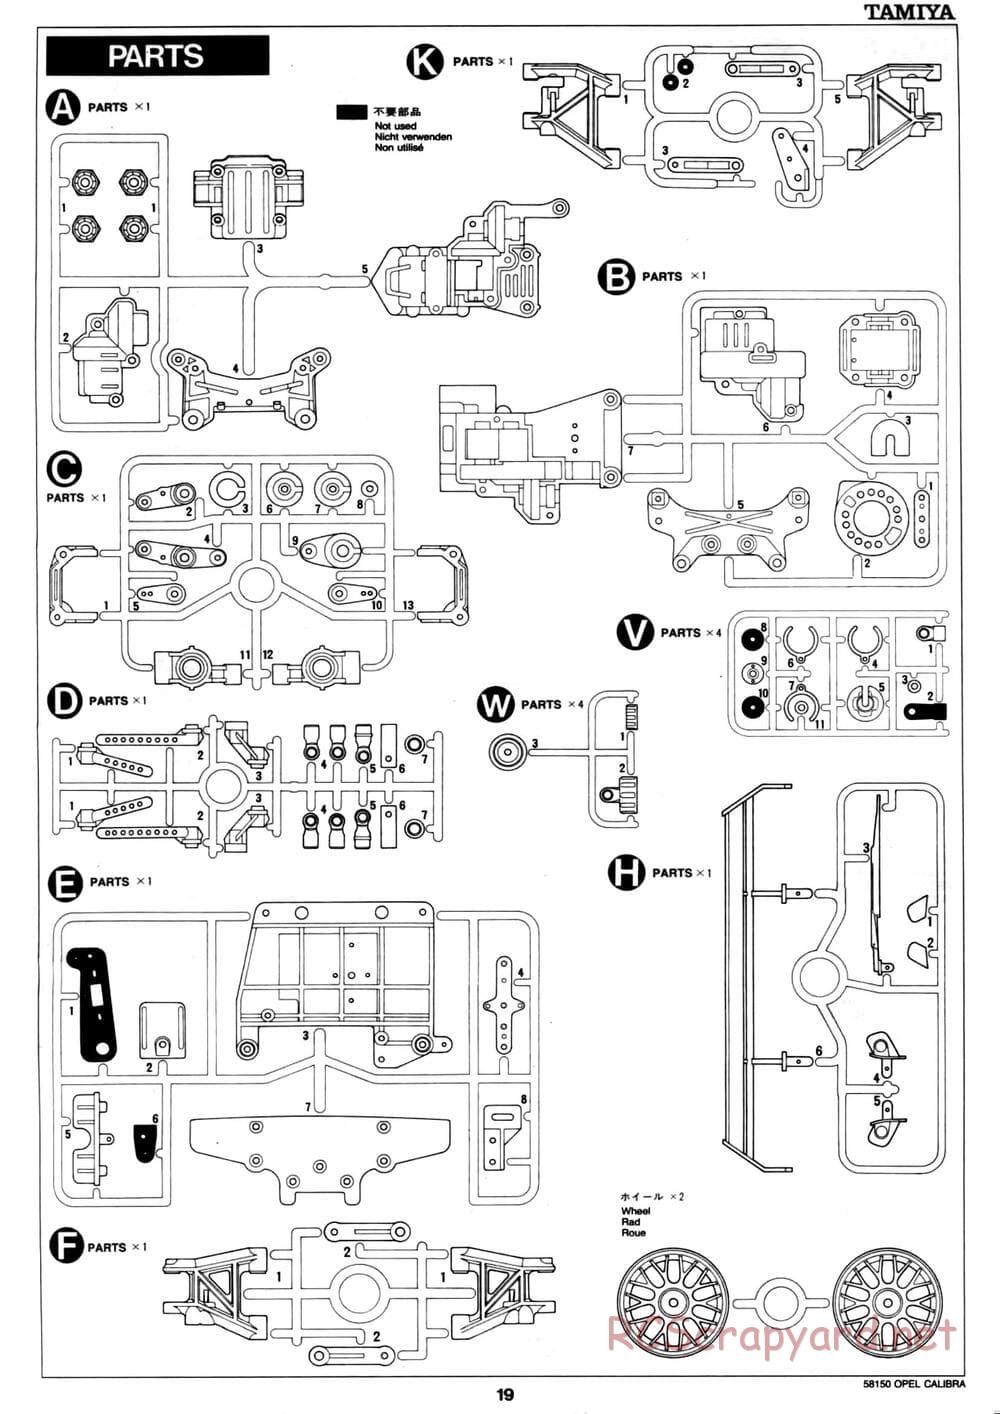 Tamiya - Opel Calibra V6 DTM - TA-02 Chassis - Manual - Page 20